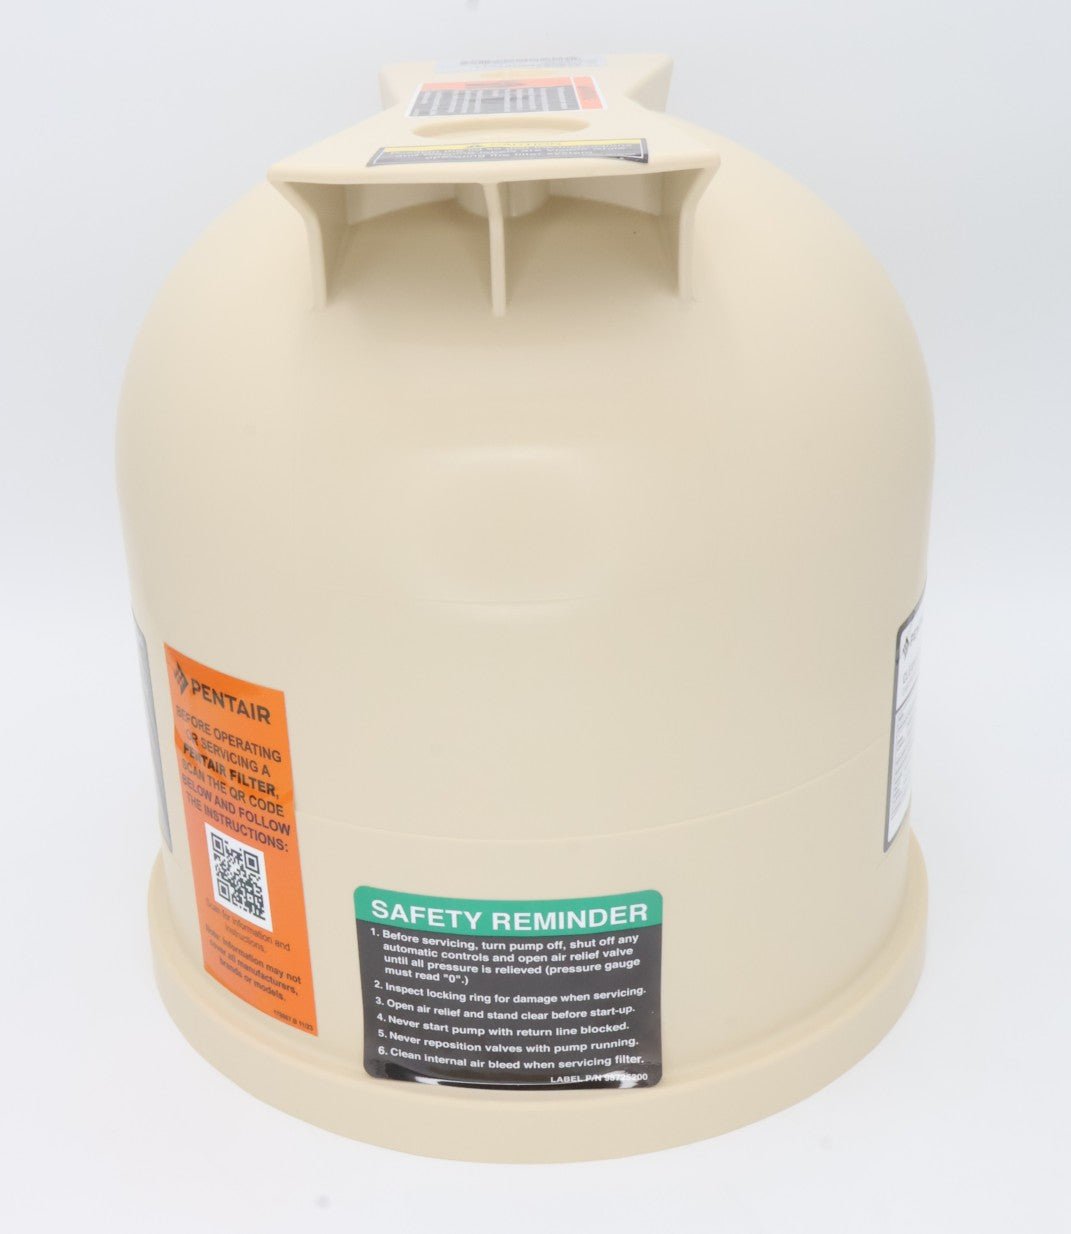 Pentair 75, 150, & 200 SqFt Clean & Clear Easyclean Almond Lid 178561 - Pool Filter Parts - img-2